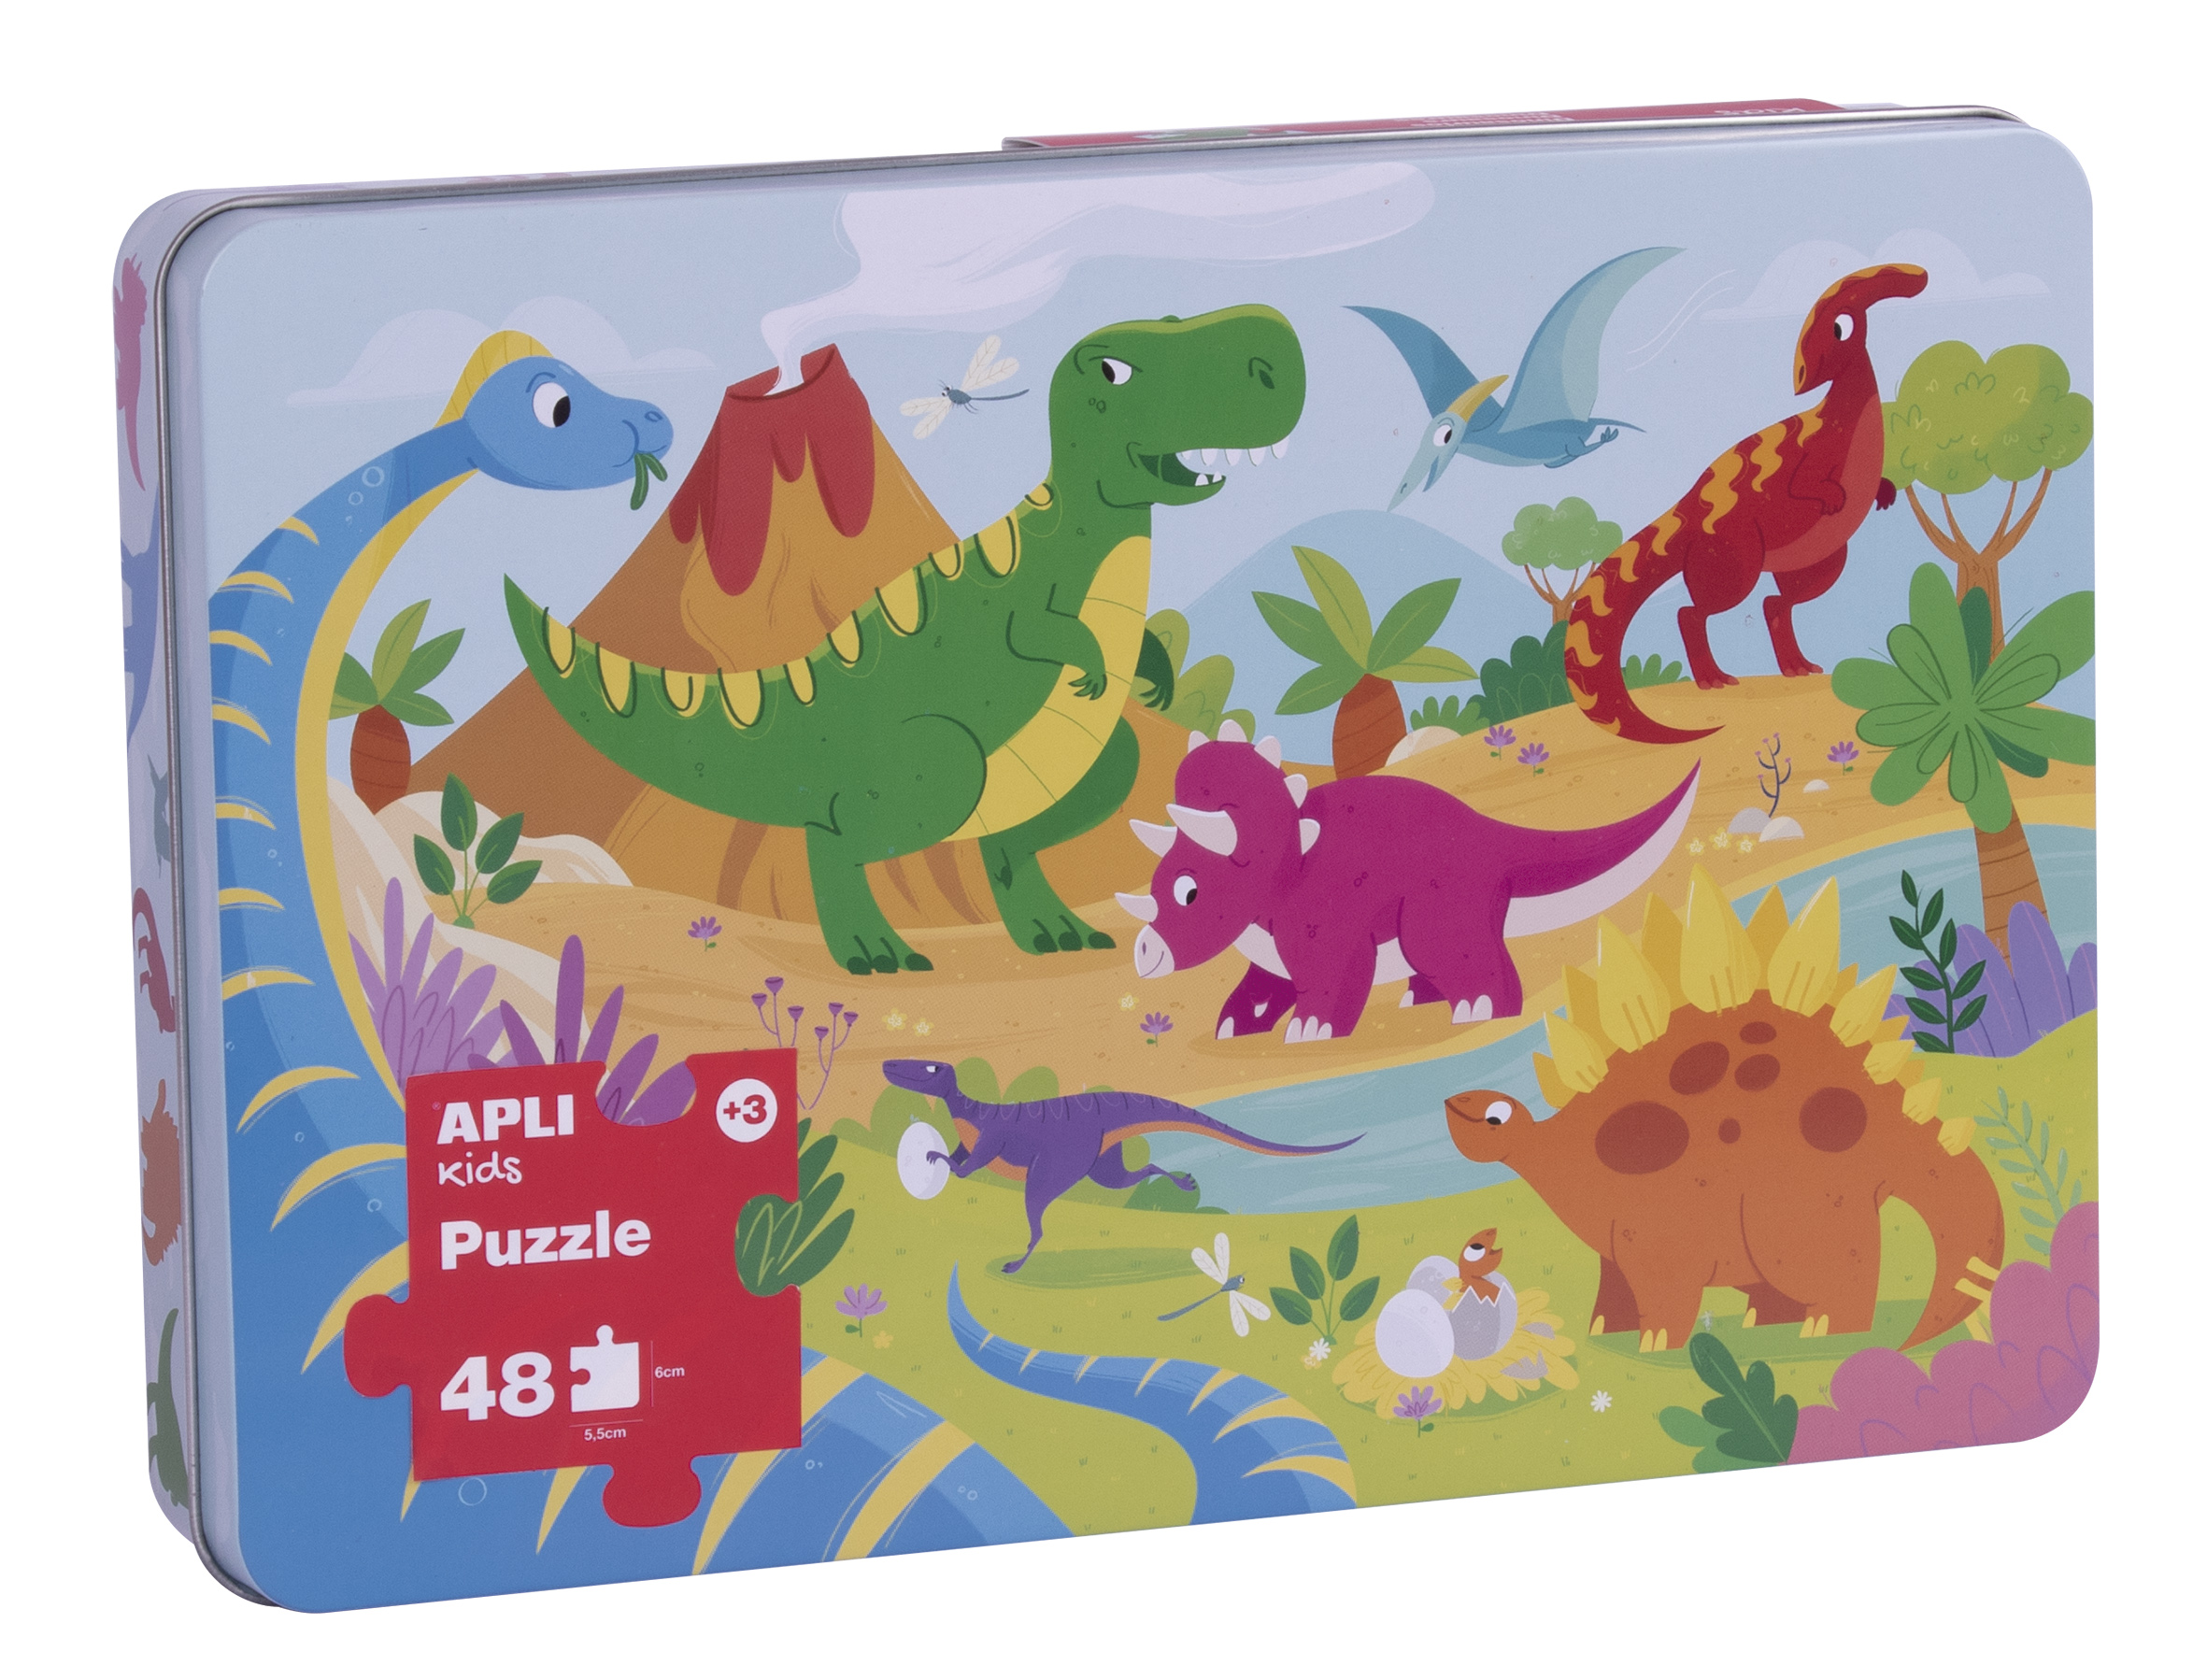 Apli Kids Puzle Dinosaurios - 48 Piezas de 5.5x6cm - Caja Metalica Rectangular - Diseo Exclusivo In